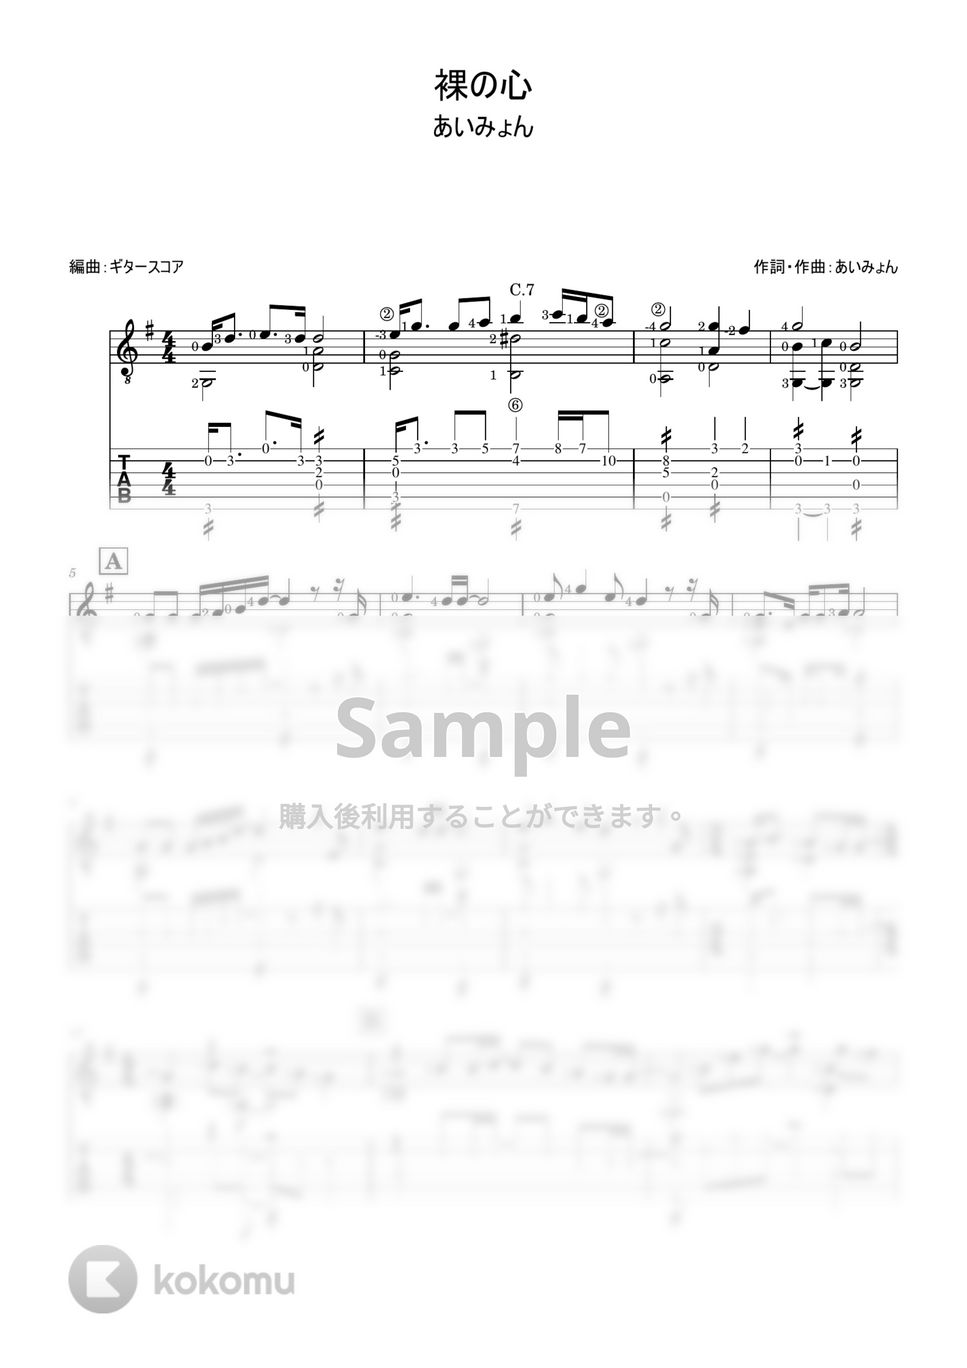 あいみょん - 裸の心 (ギターソロ用・tab付き) by ギタースコア